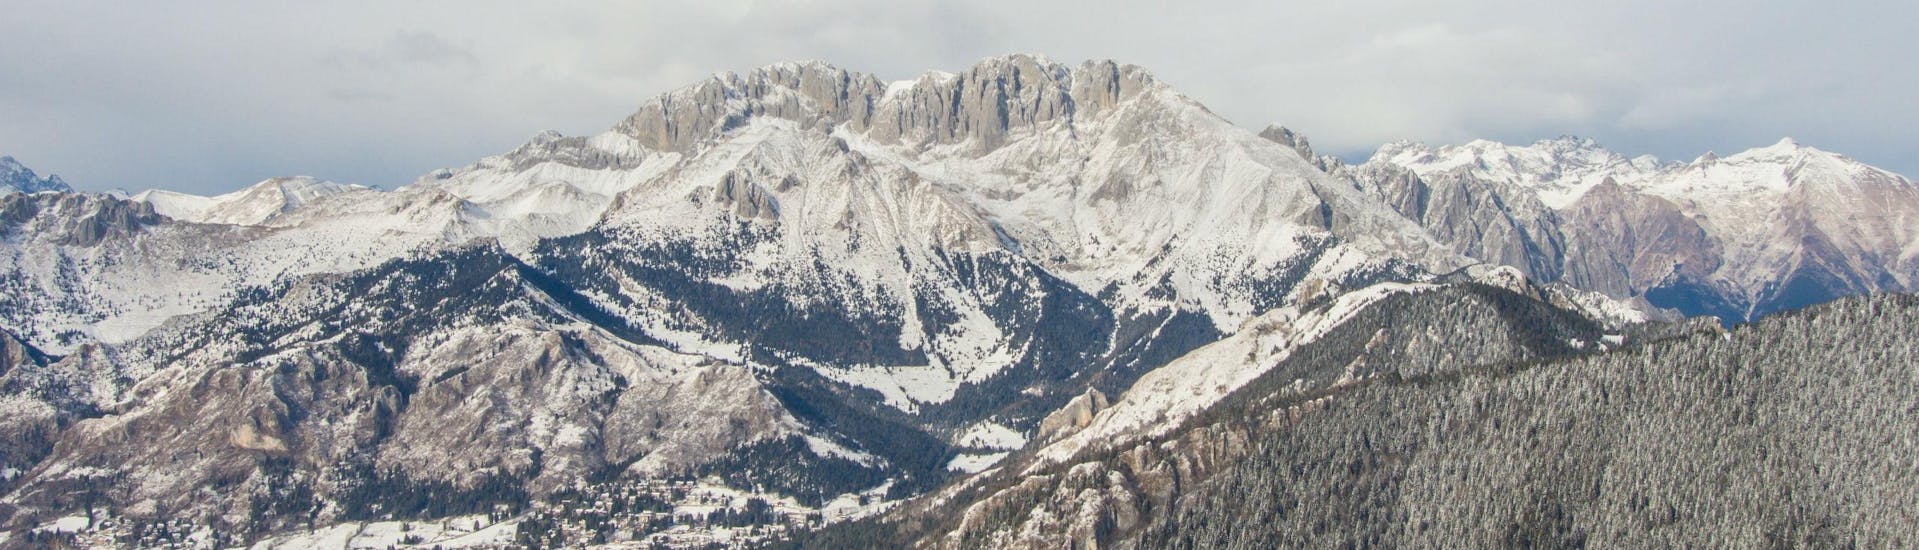 Una visuale sulla cime innevata del Monte Pora, dove le scuole di sci locali offrono le loro numerose lezioni di sci.